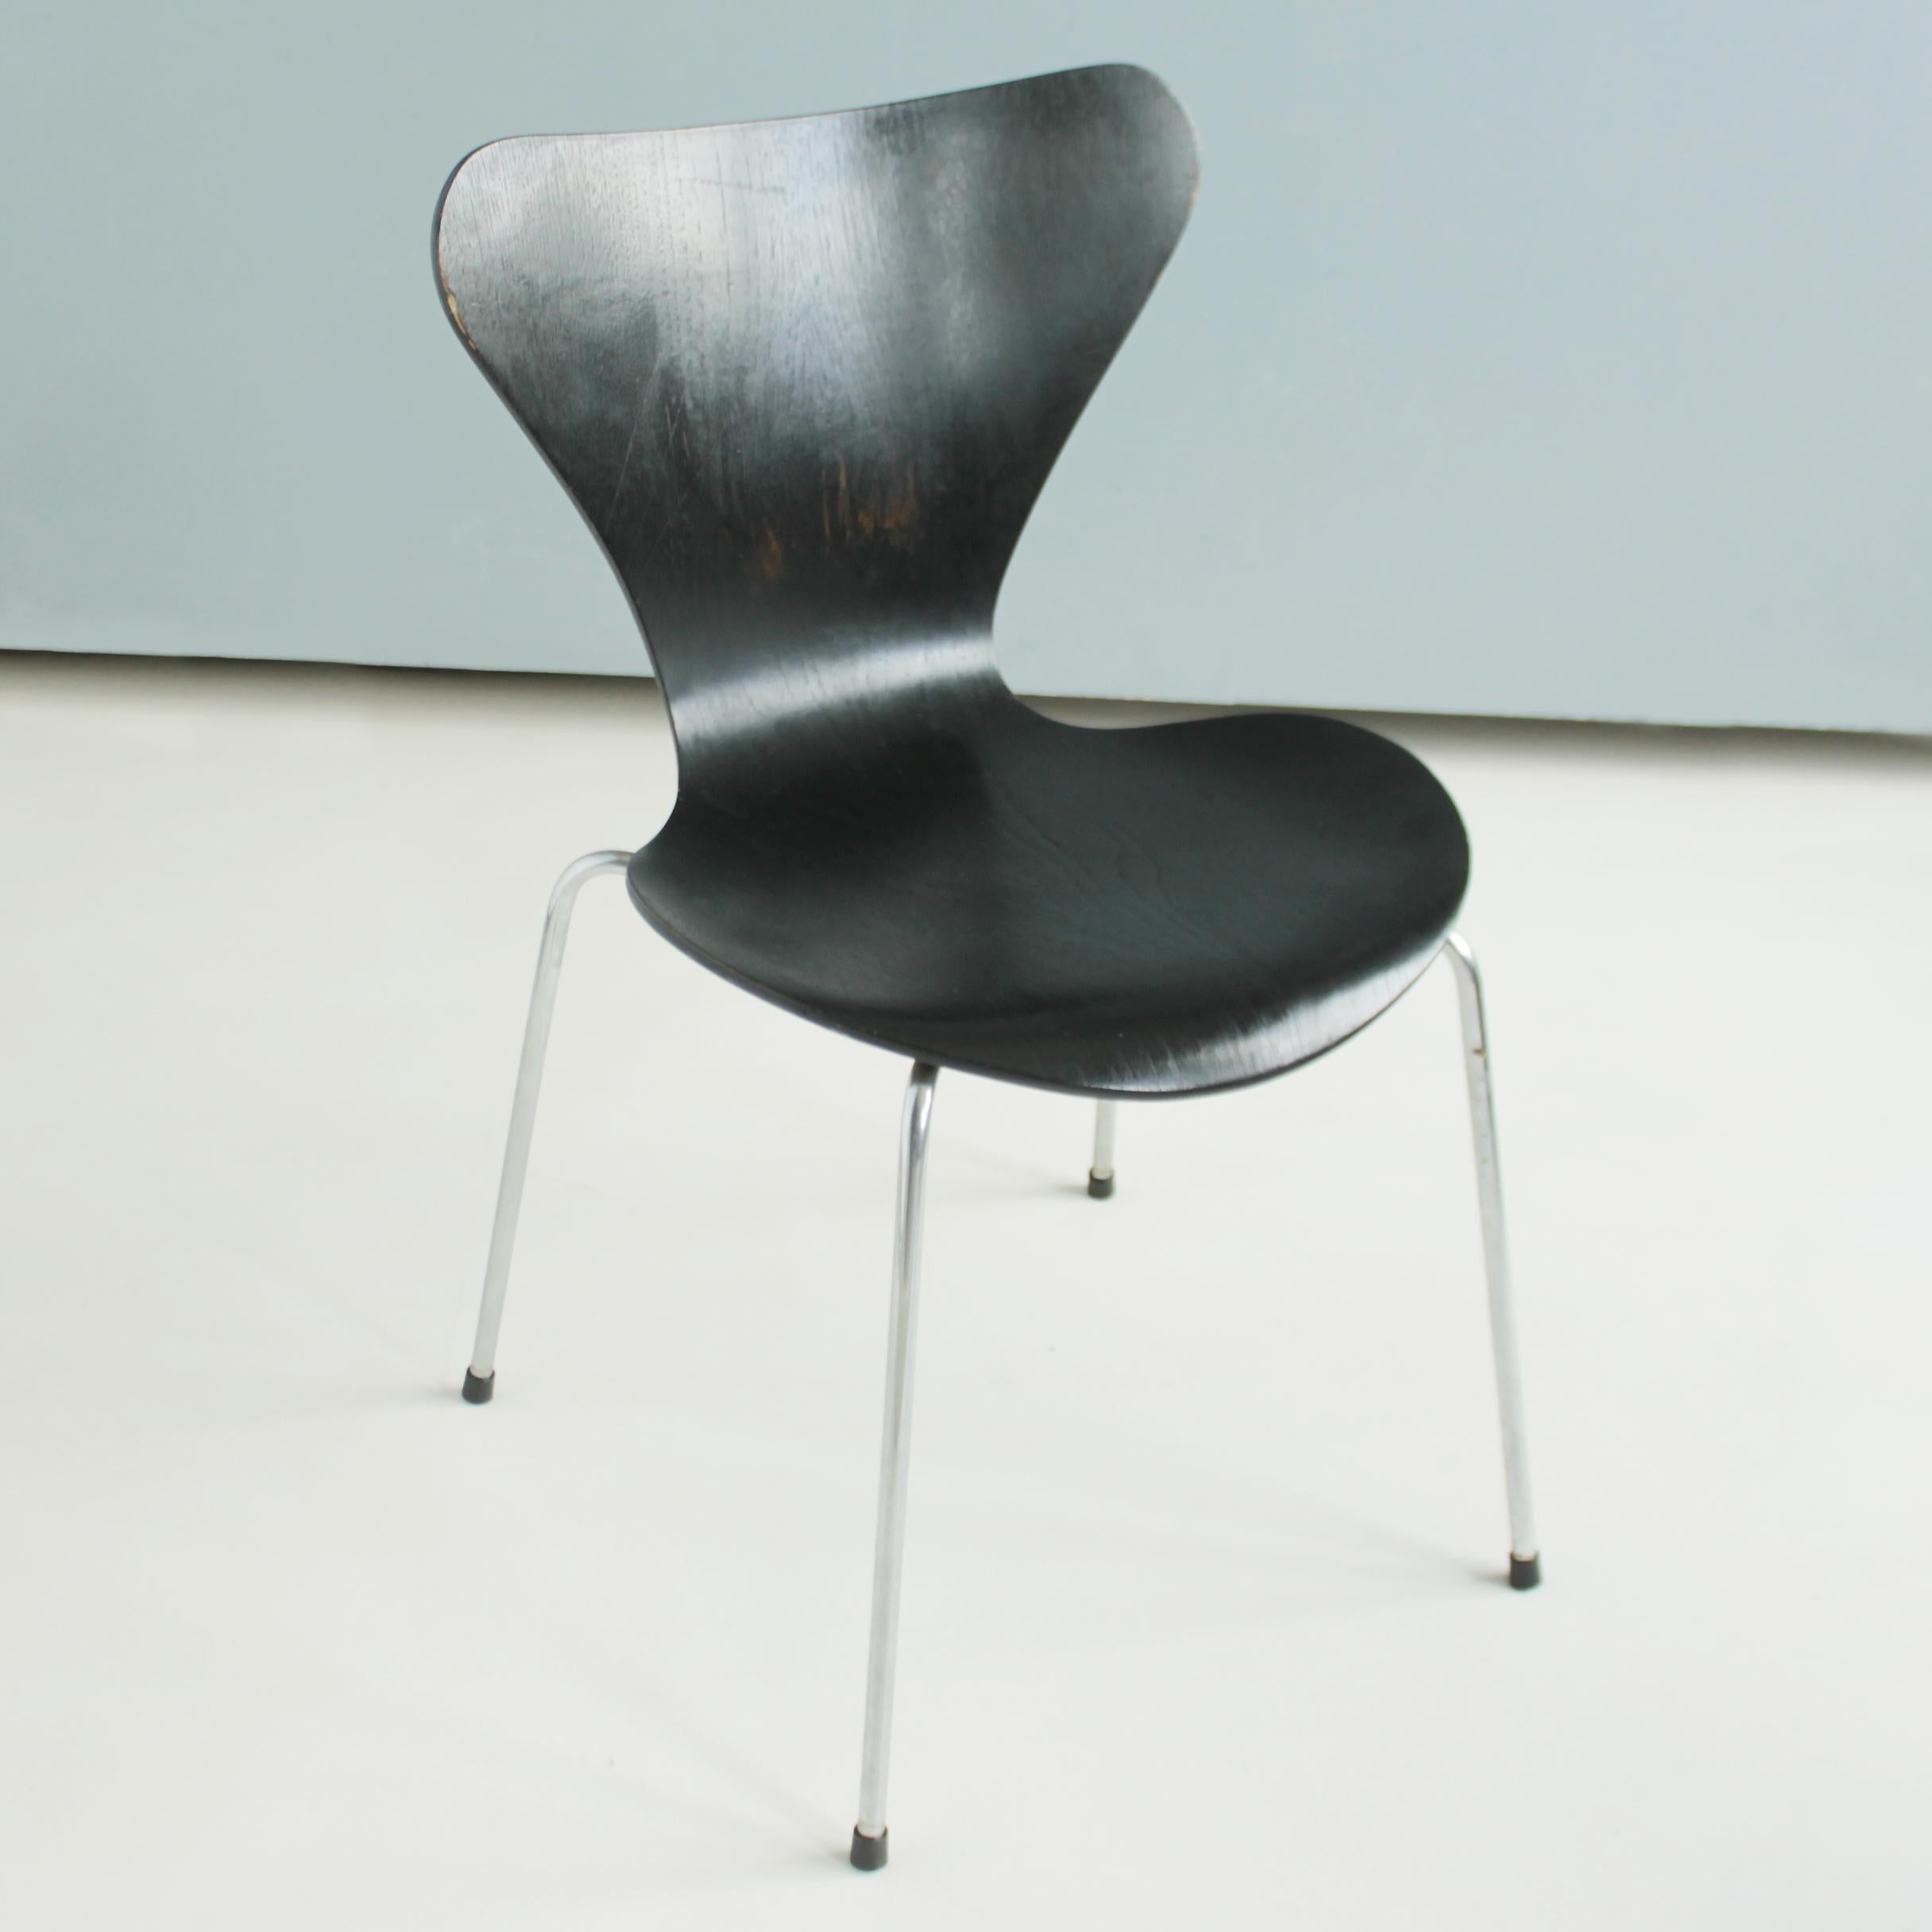 Arne Jacobsen Series 7 Chairs by Fritz Hansen 1